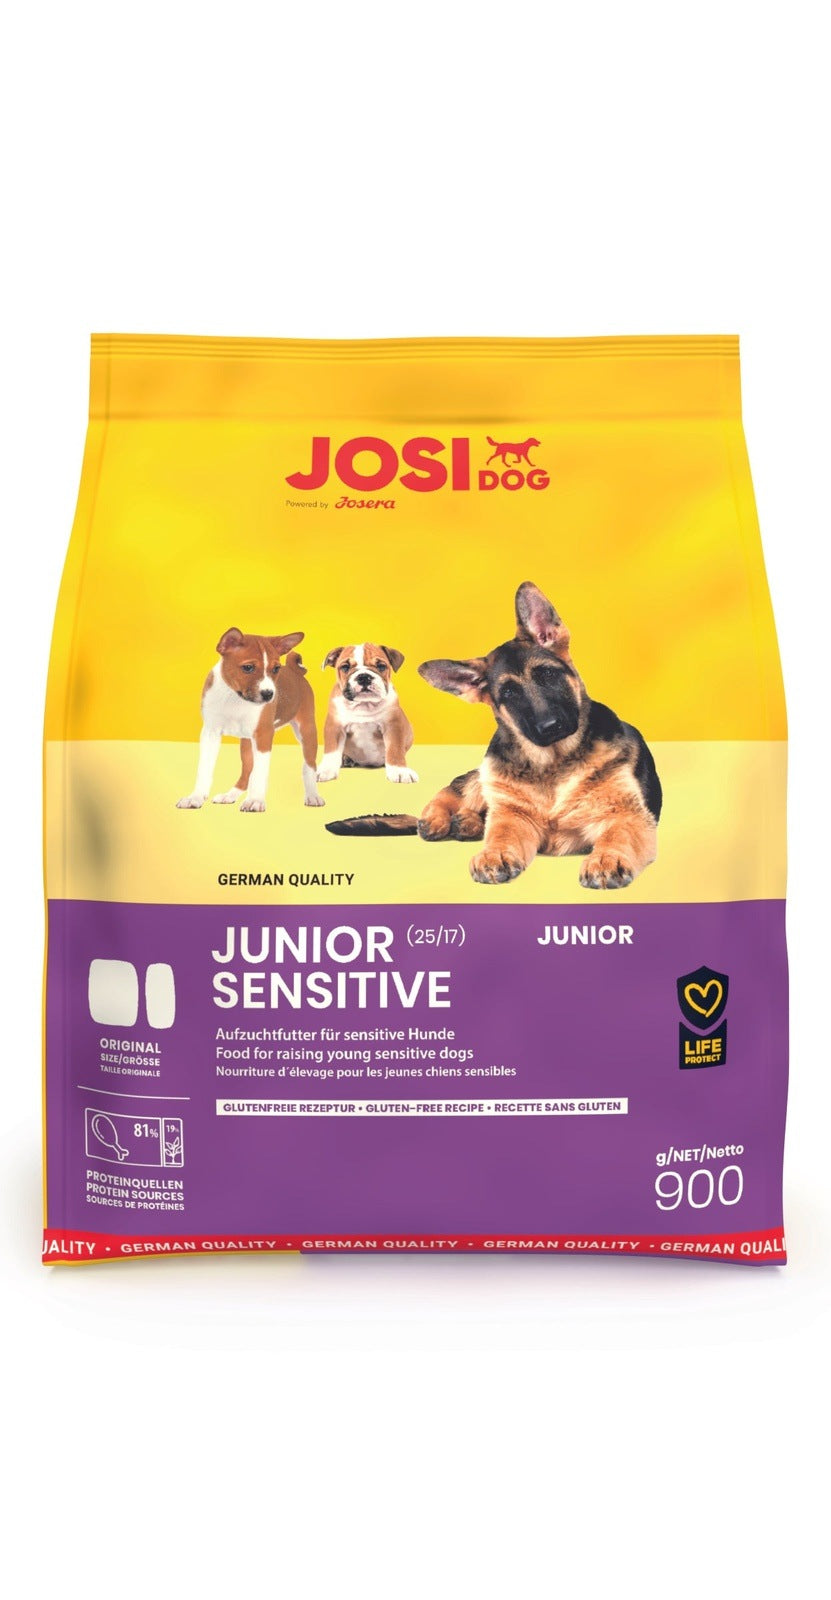 Artikel mit dem Namen JosiDog Junior Sensitive im Shop von zoo.de , dem Onlineshop für nachhaltiges Hundefutter und Katzenfutter.